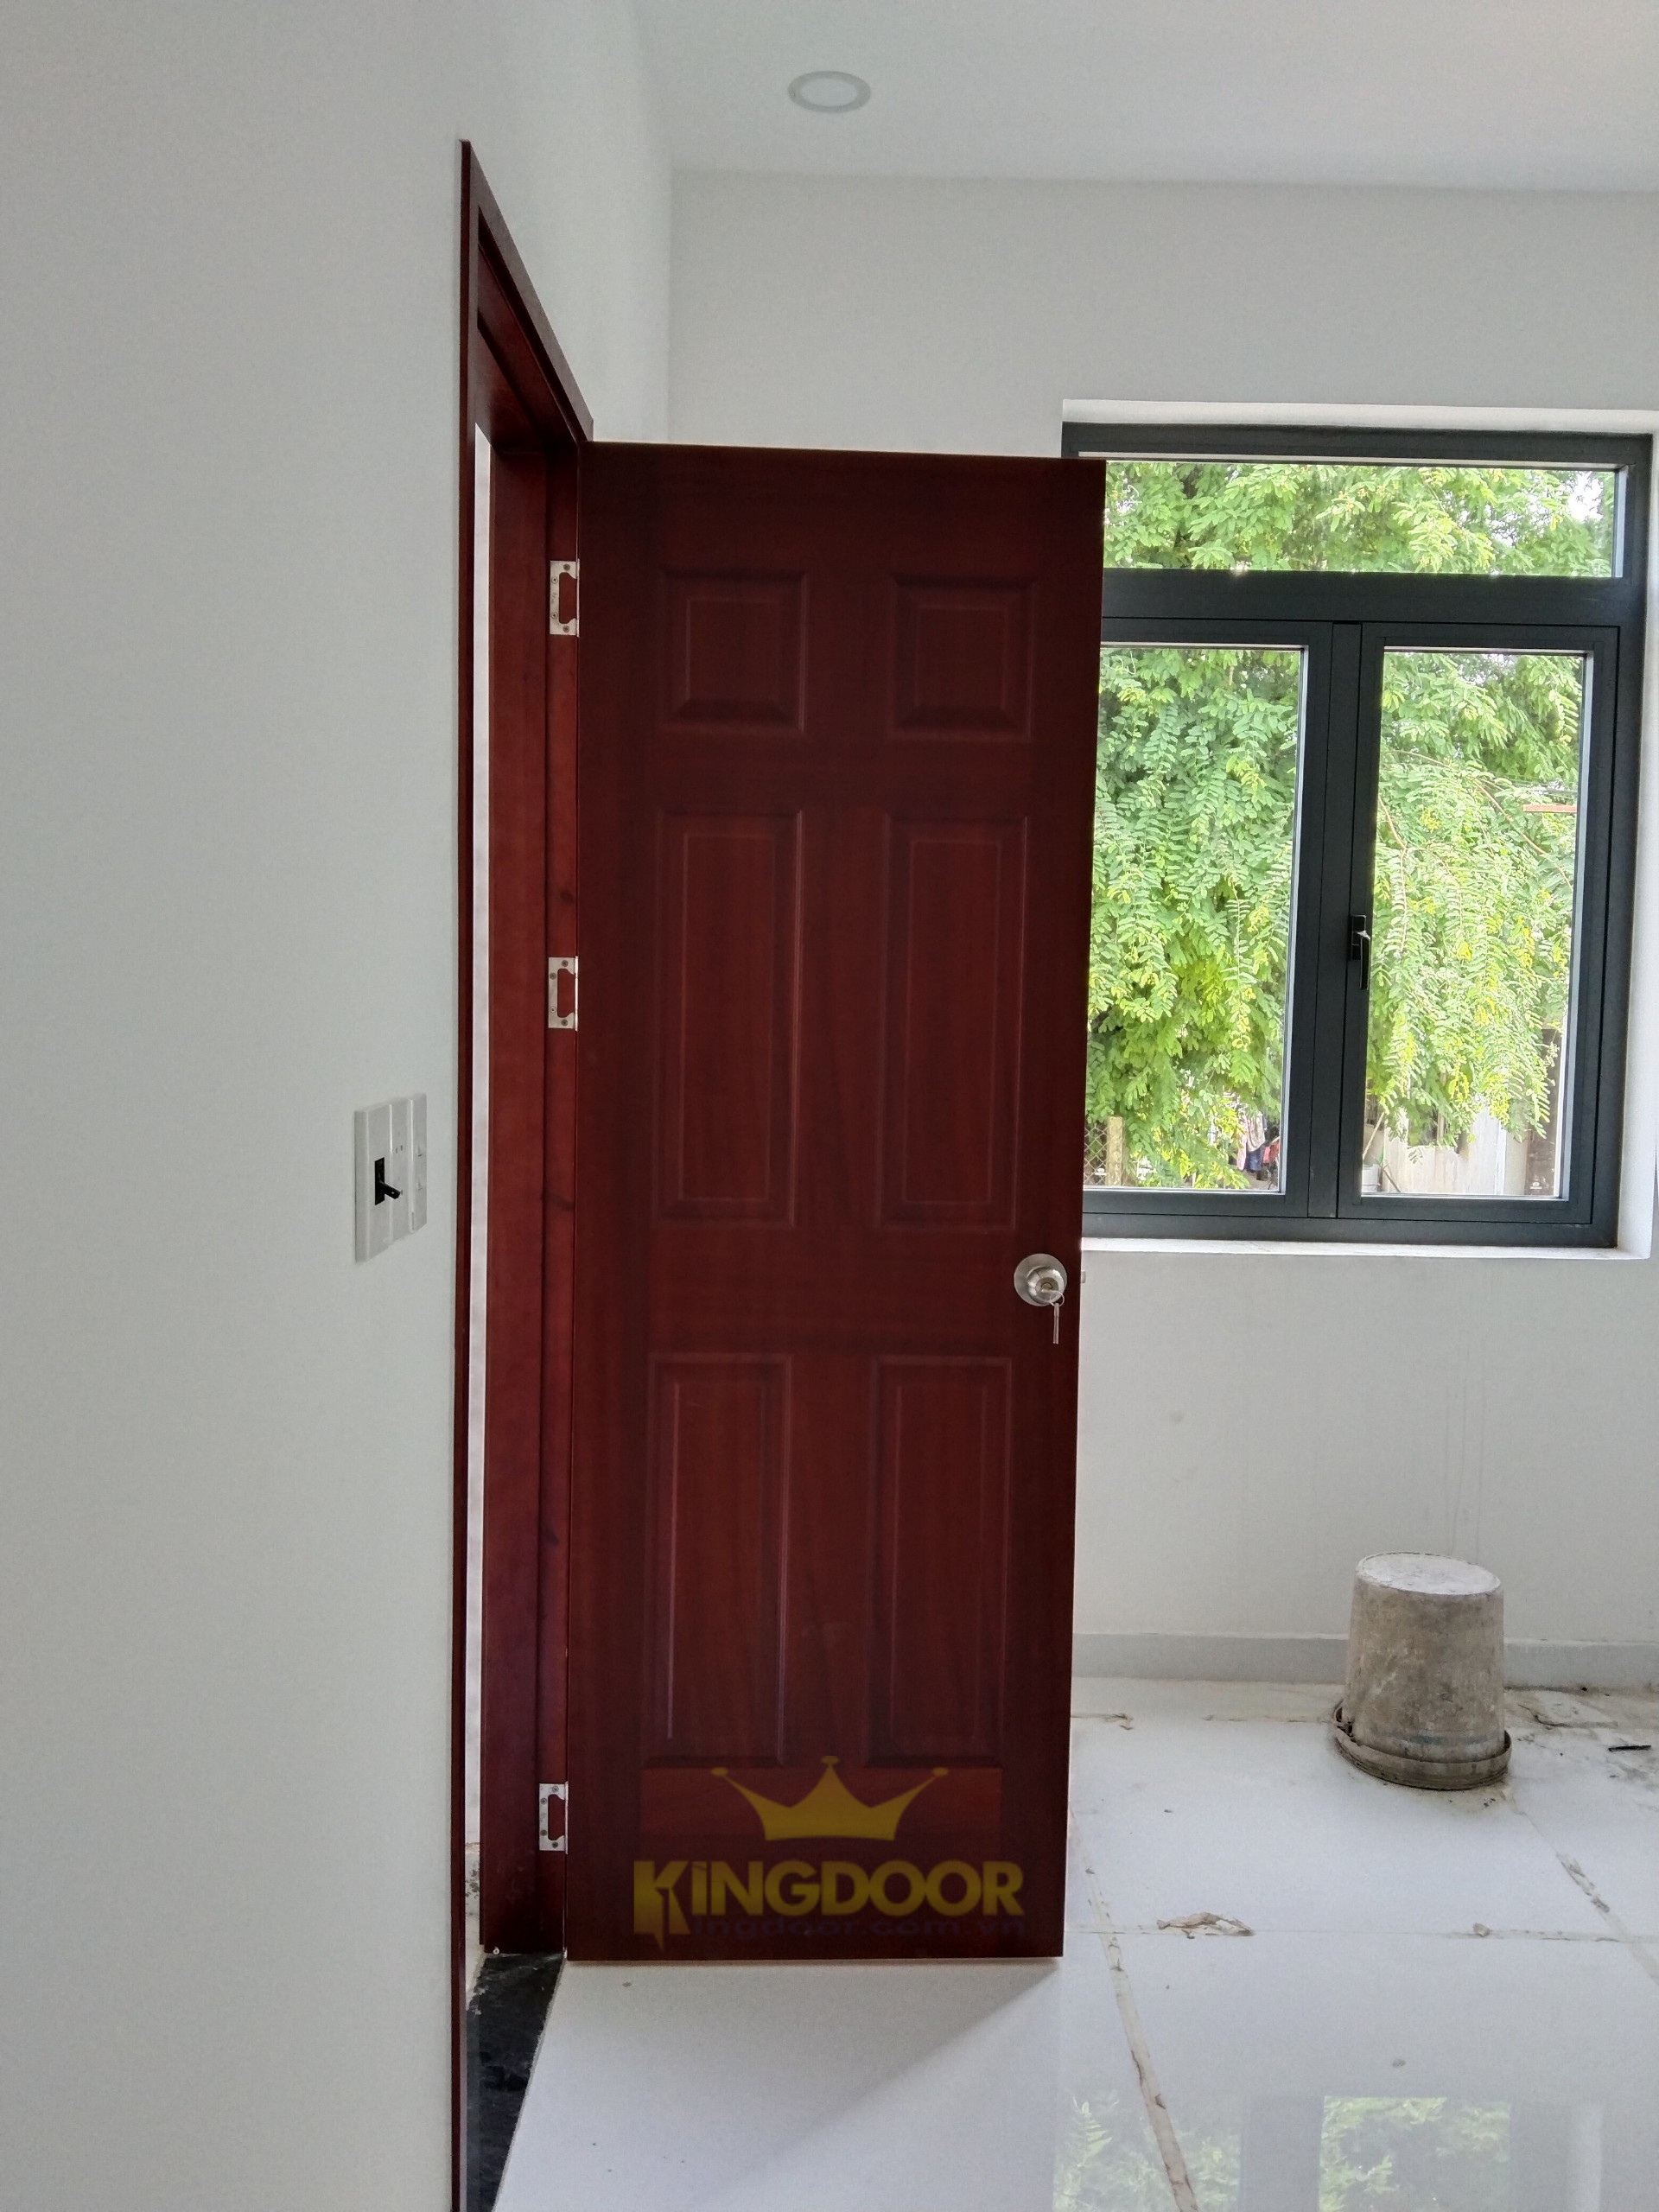 Kingdoor thi công lắp dựng hoàn thiện mẫu cửa gỗ phòng ngủ HDF Veneer tại Đồng Nai.